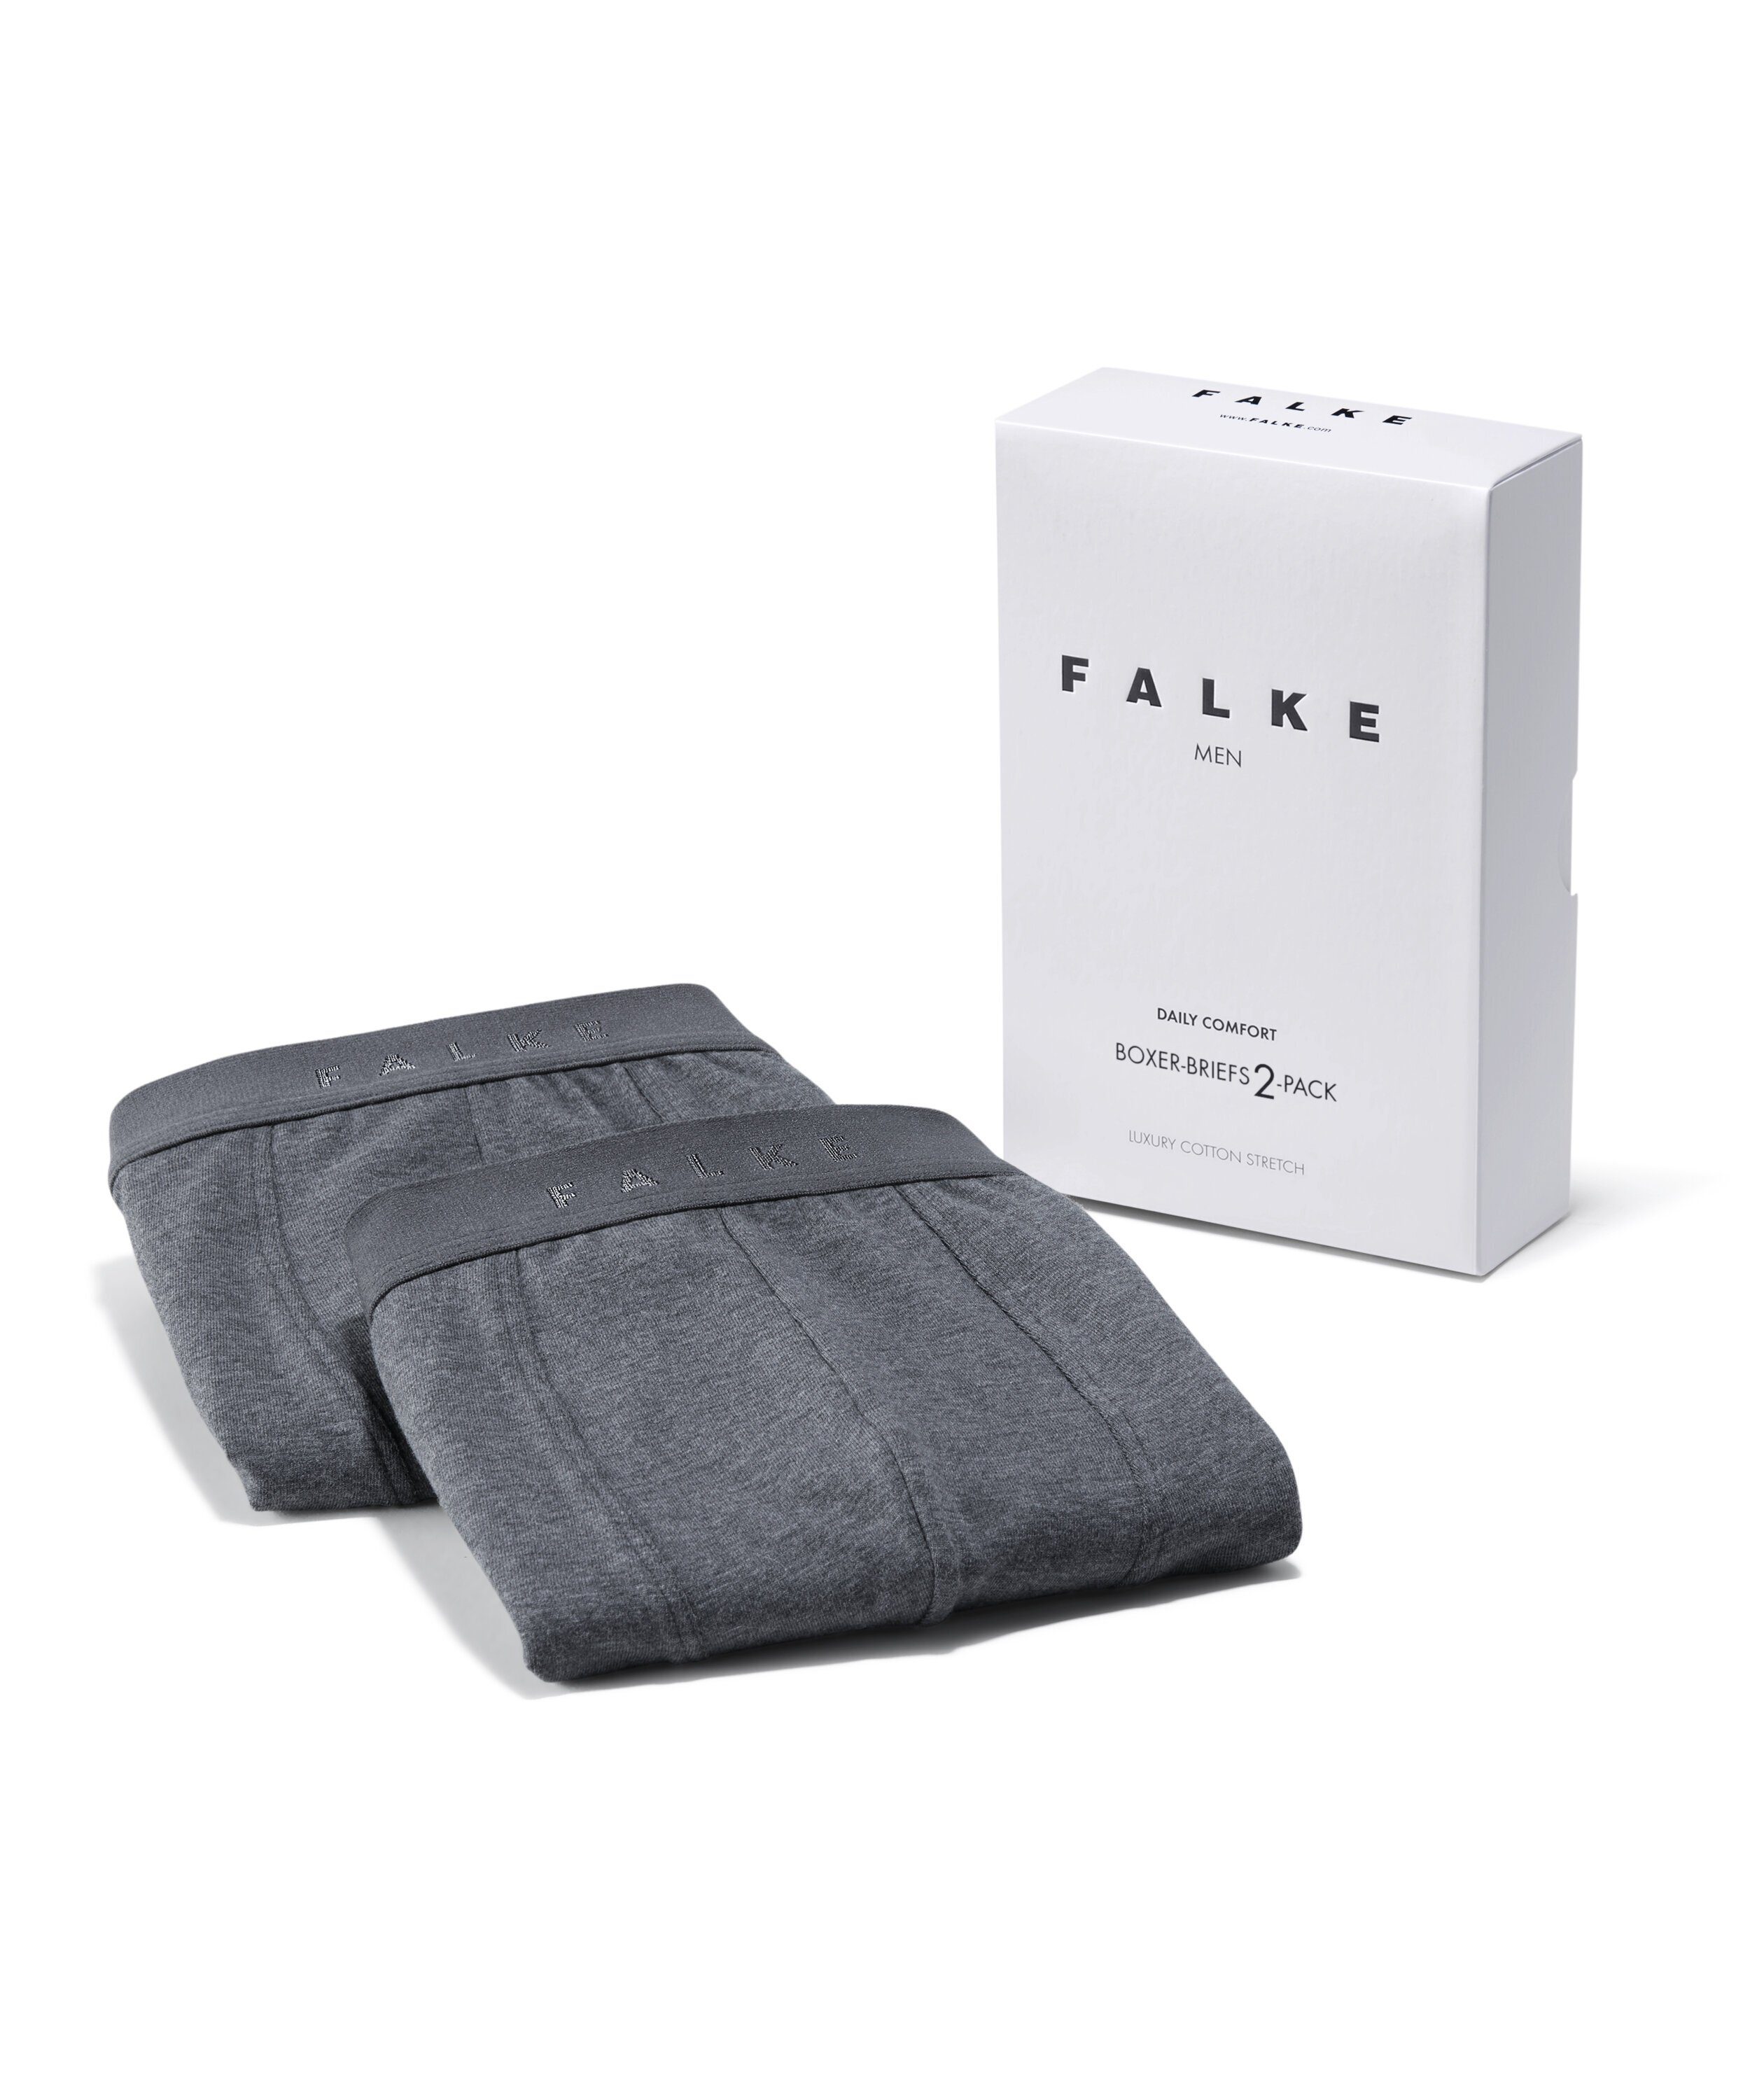 FALKE Boxershorts 2-Pack (2-St) Softe Baumwolle grey mit Elasthan -heather dark (3278)